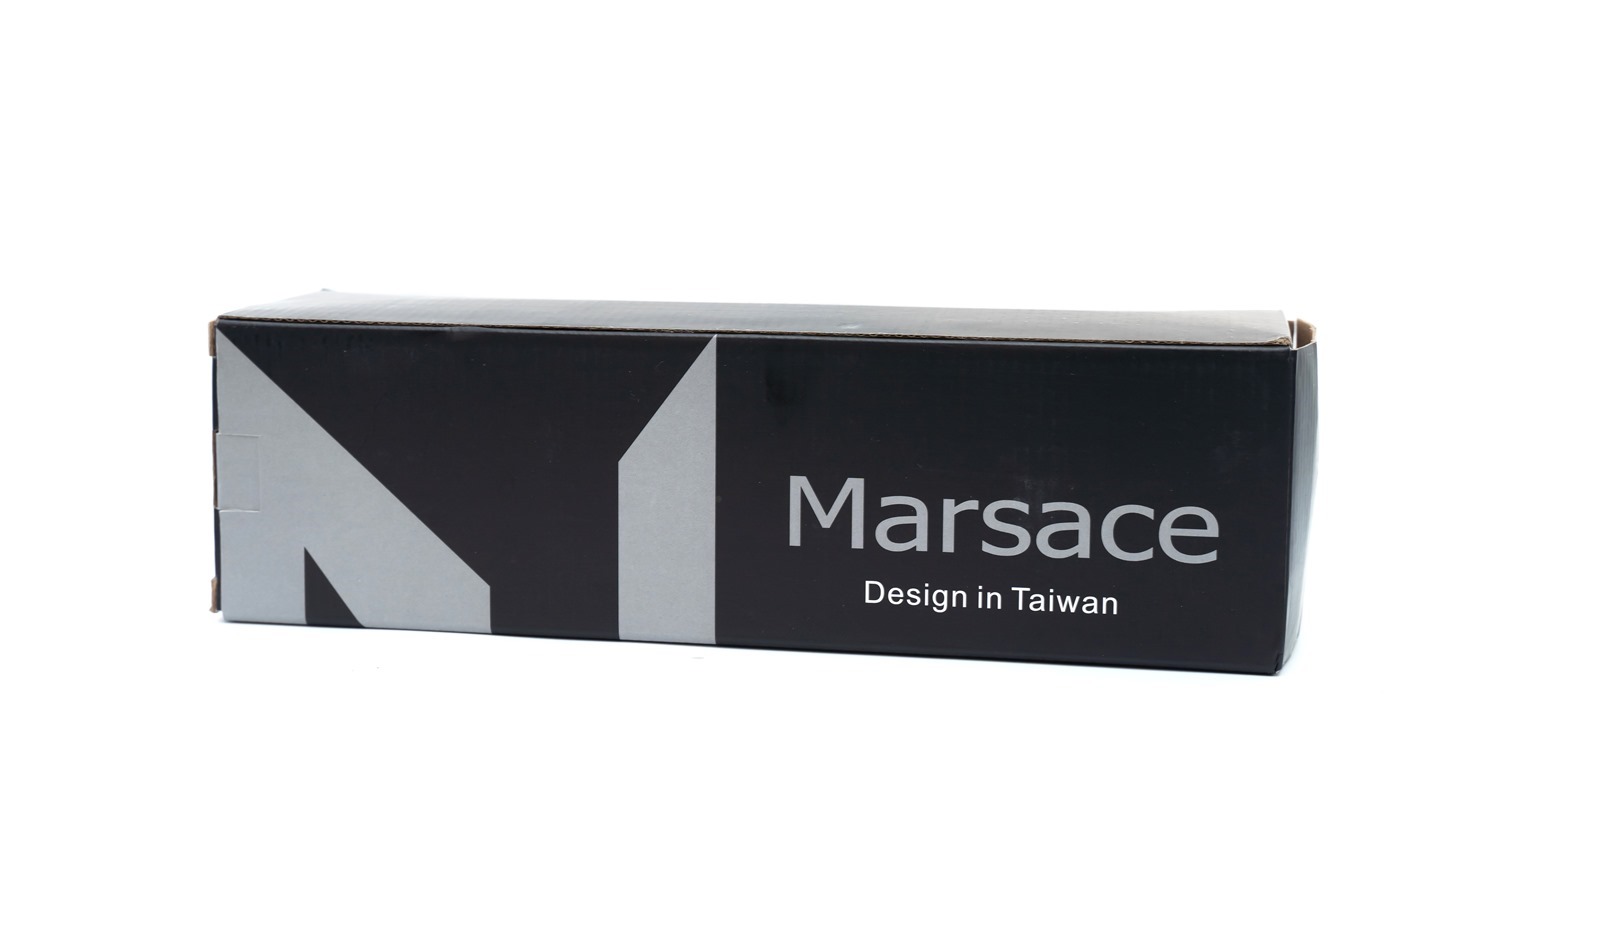 依然是四千最值得買嗎？Marsace 瑪瑟士 C15i+ 碳纖維攜帶腳架開箱～ 和 C15i 比比看有什麼不同 @3C 達人廖阿輝